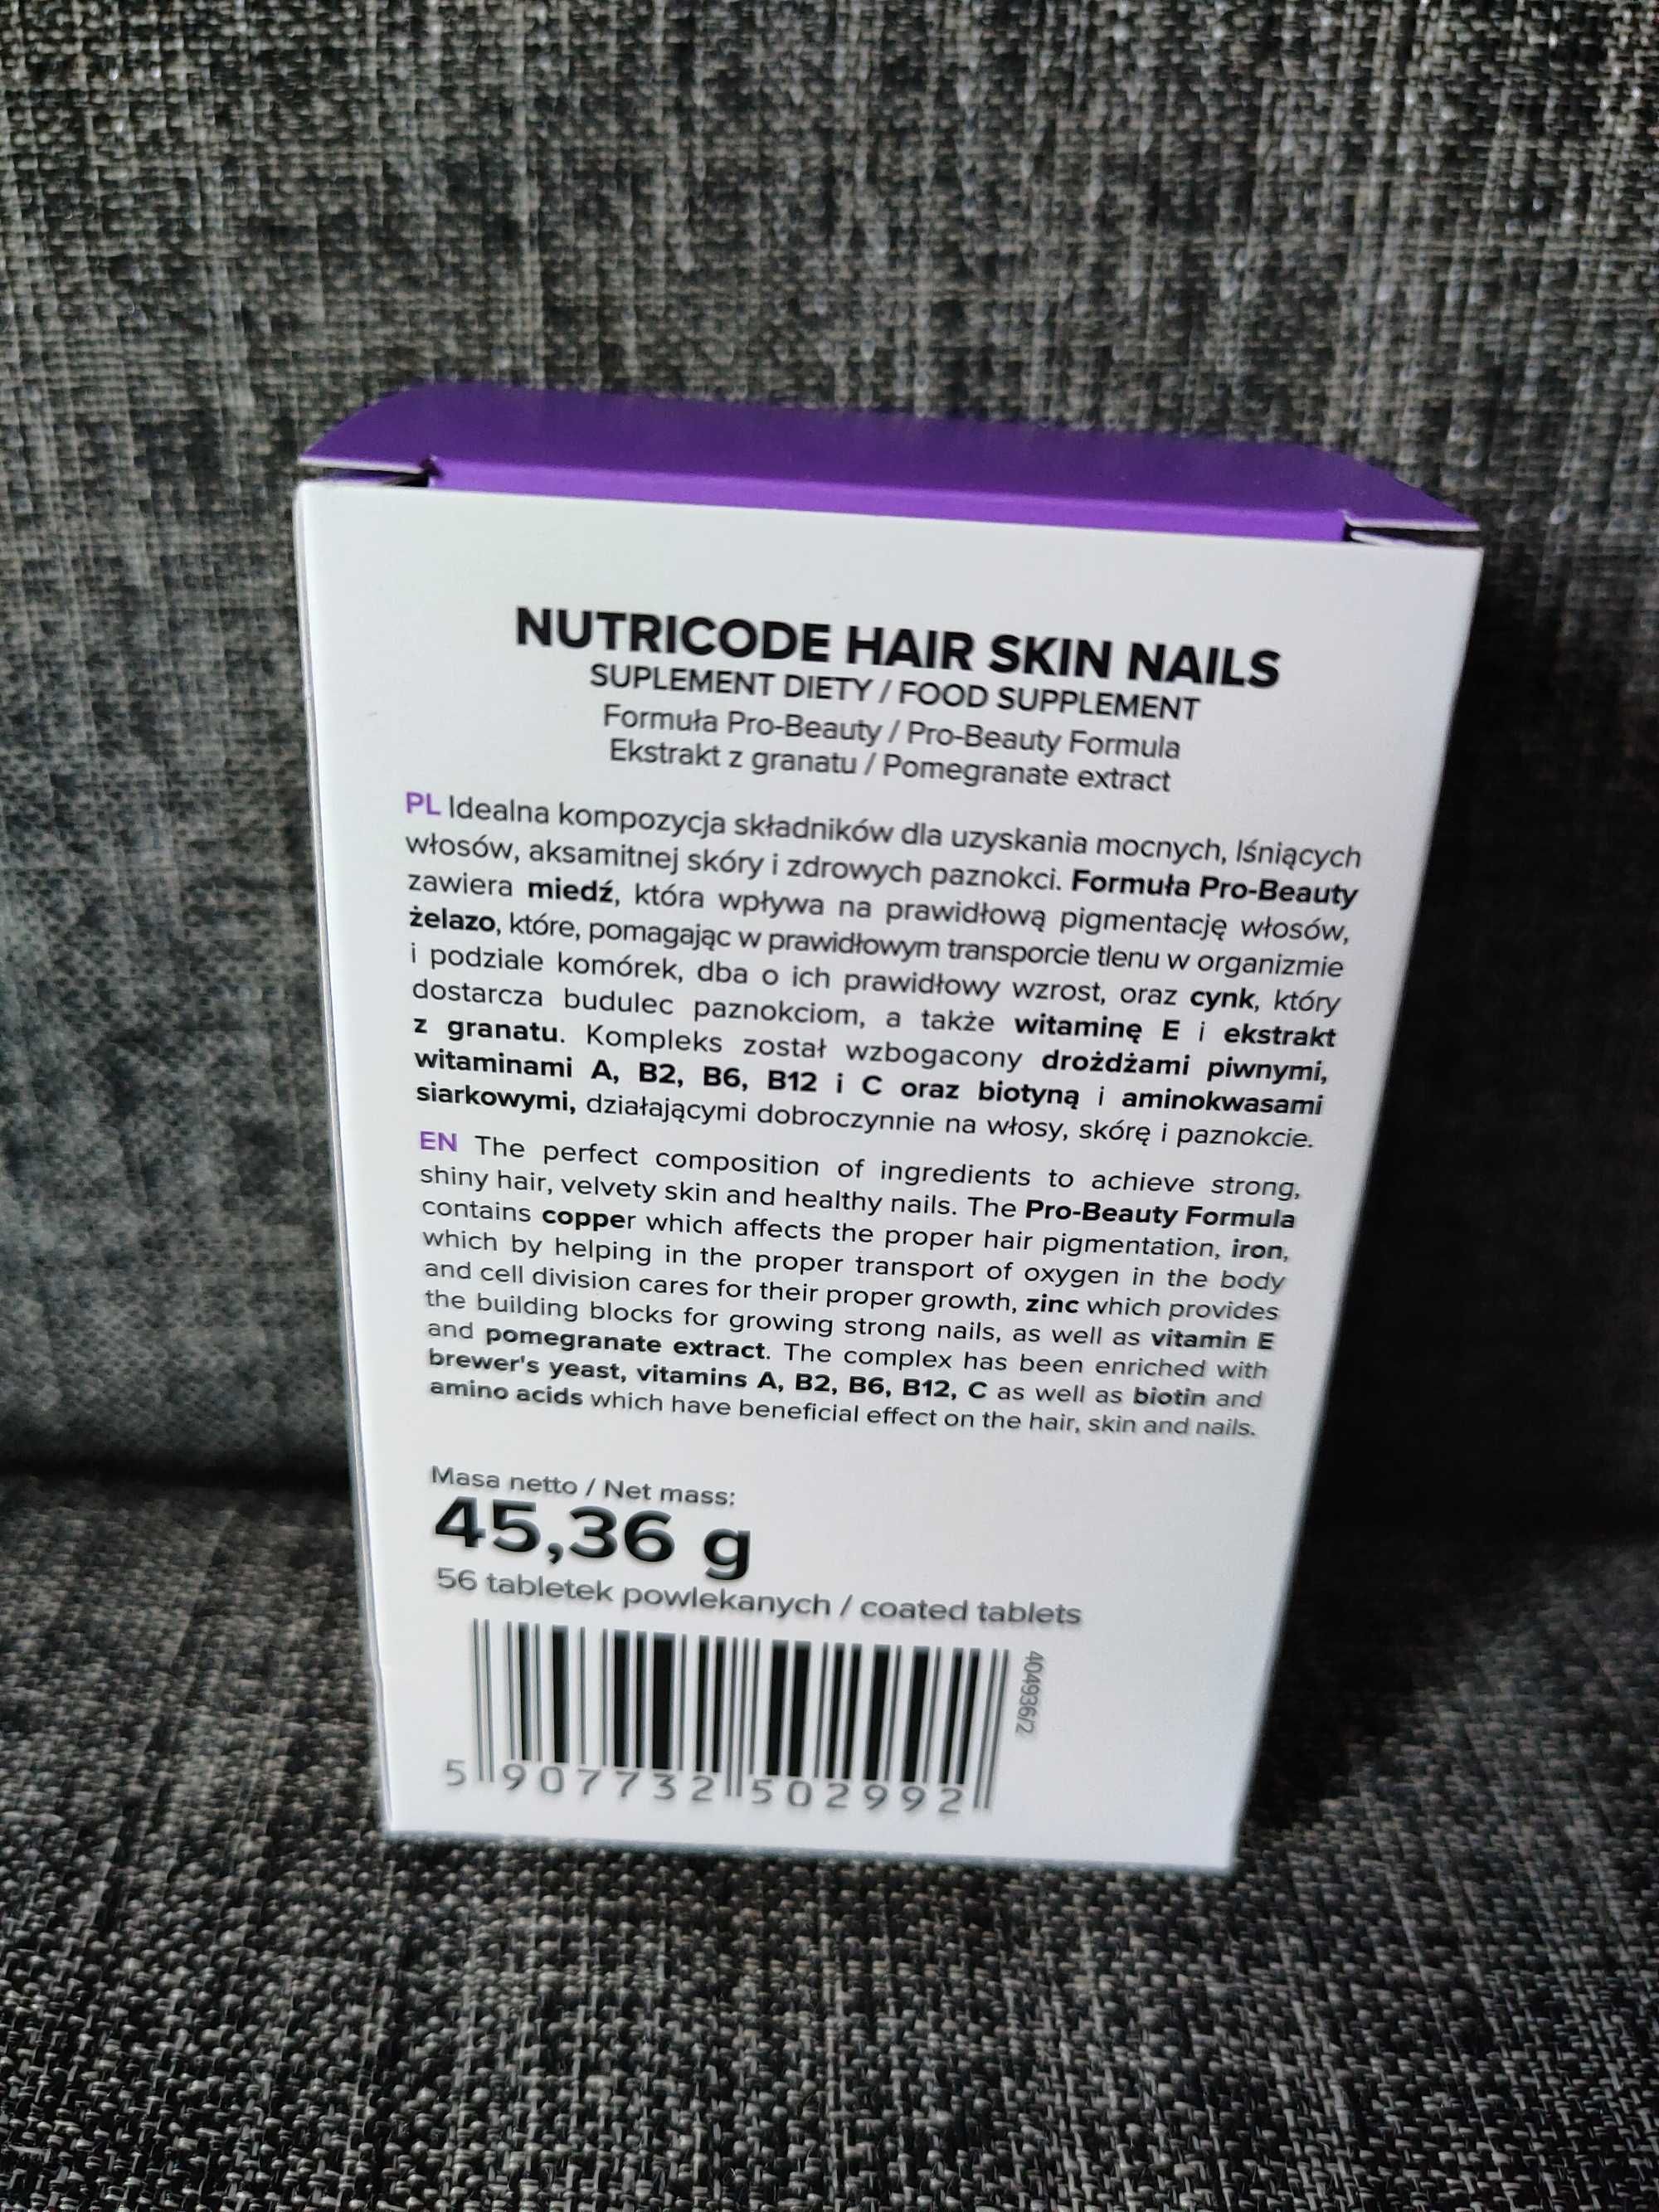 Hair Skin Nails Nutricode